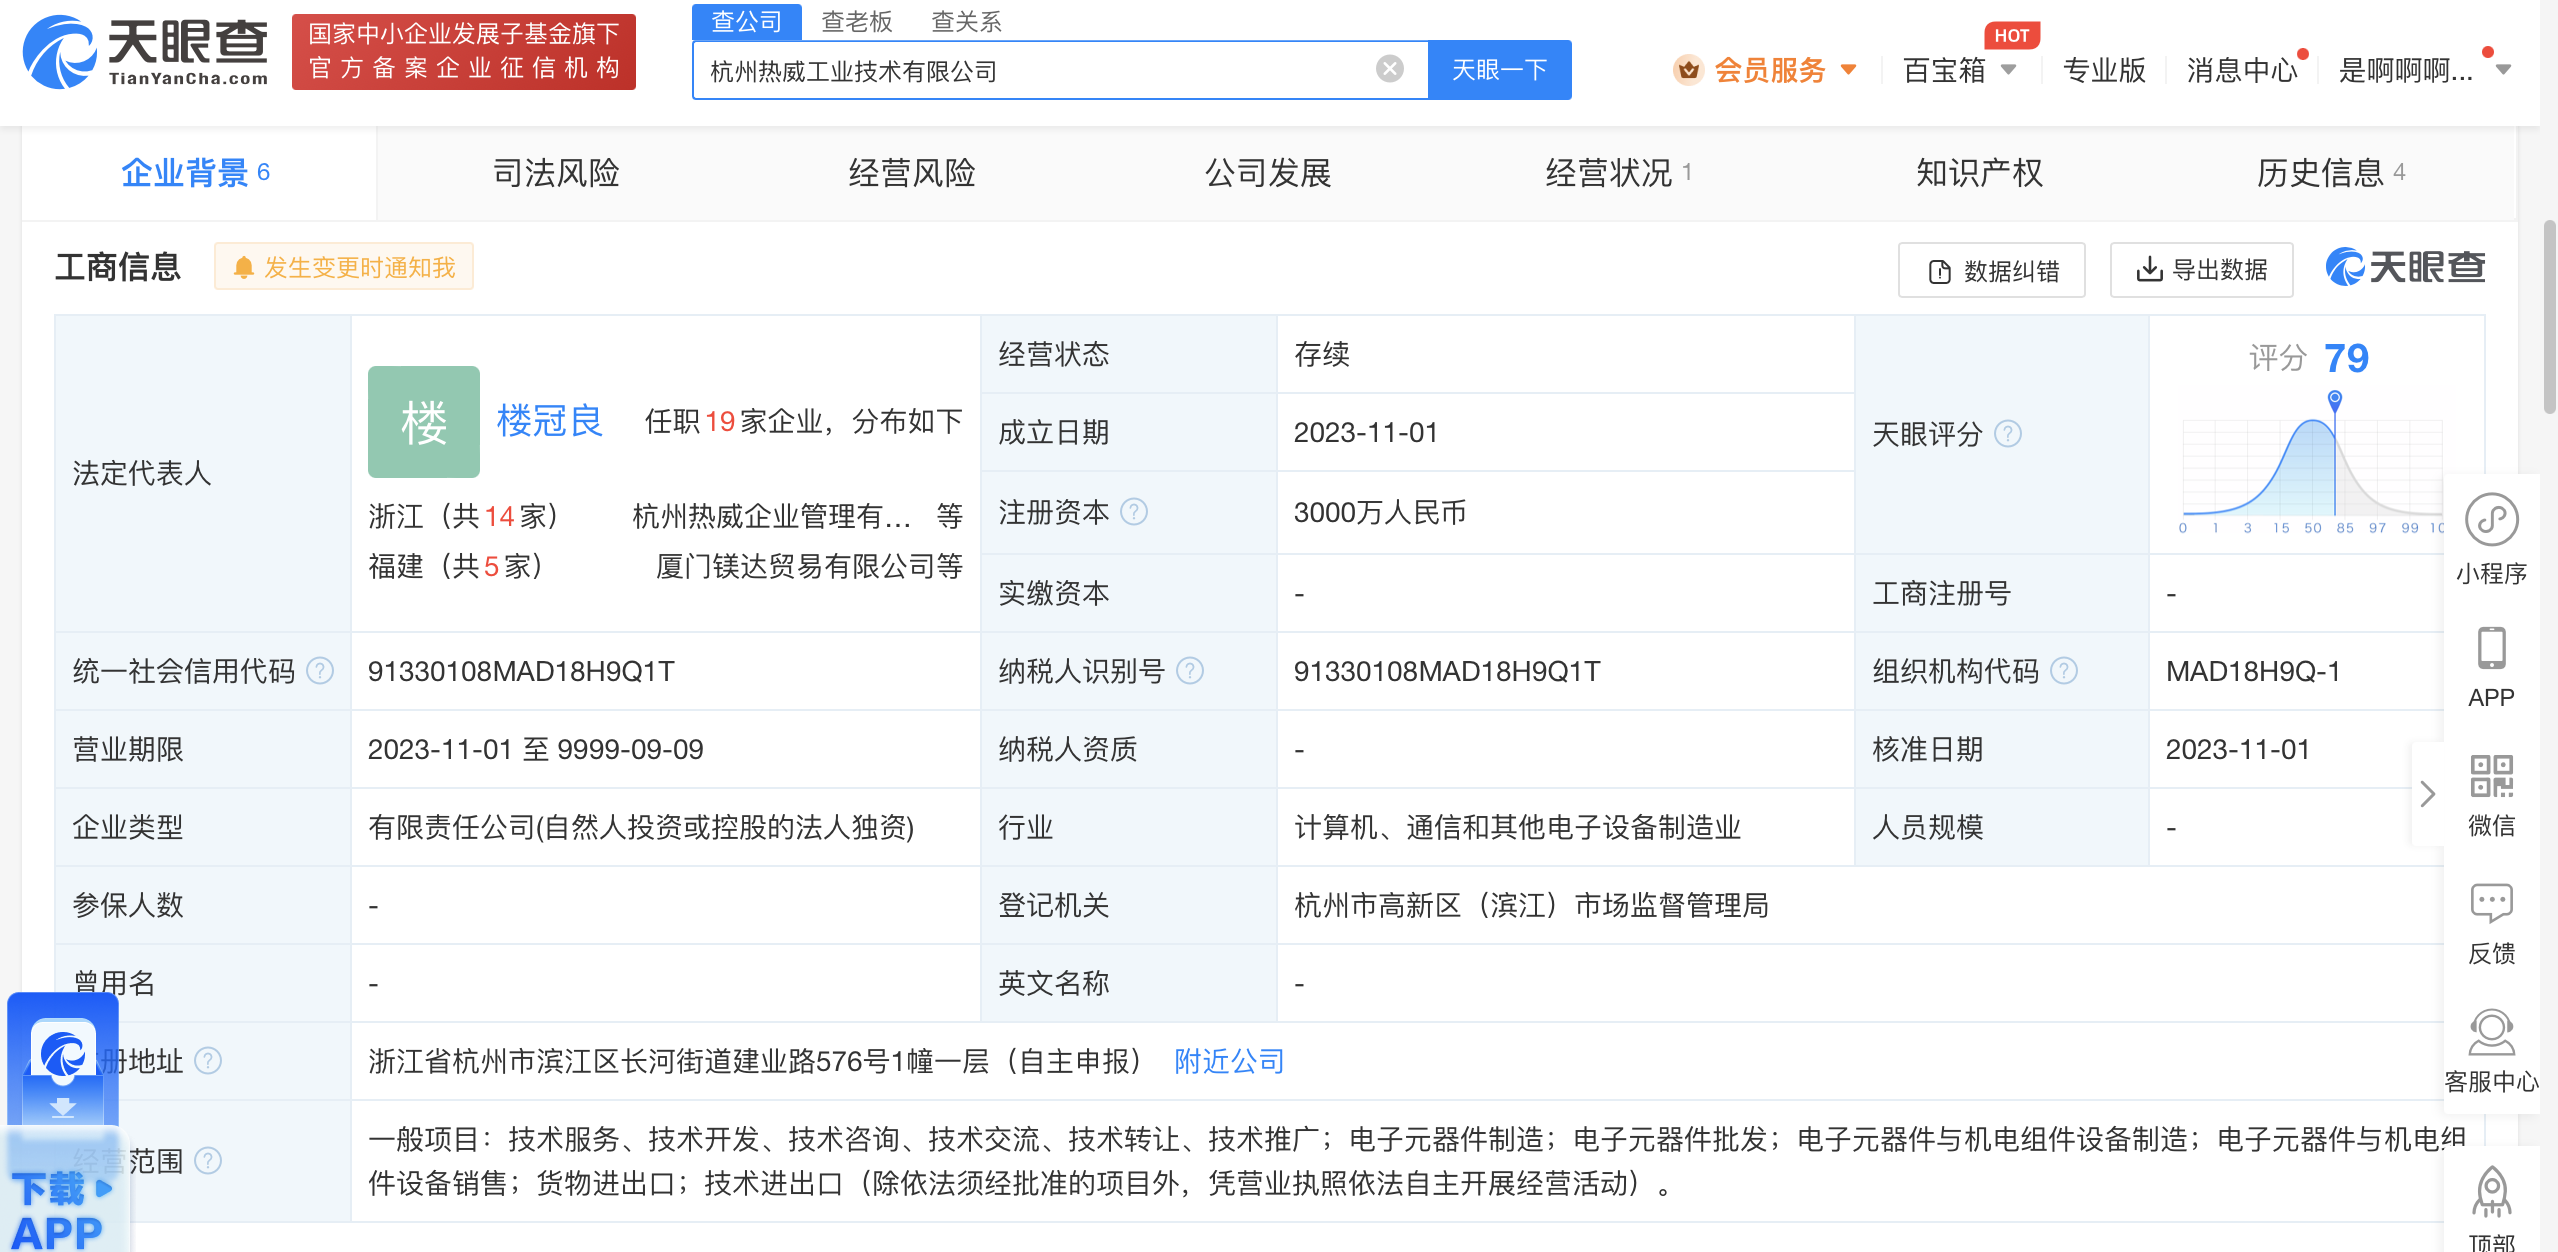 热威股份在杭州成立工业技术公司